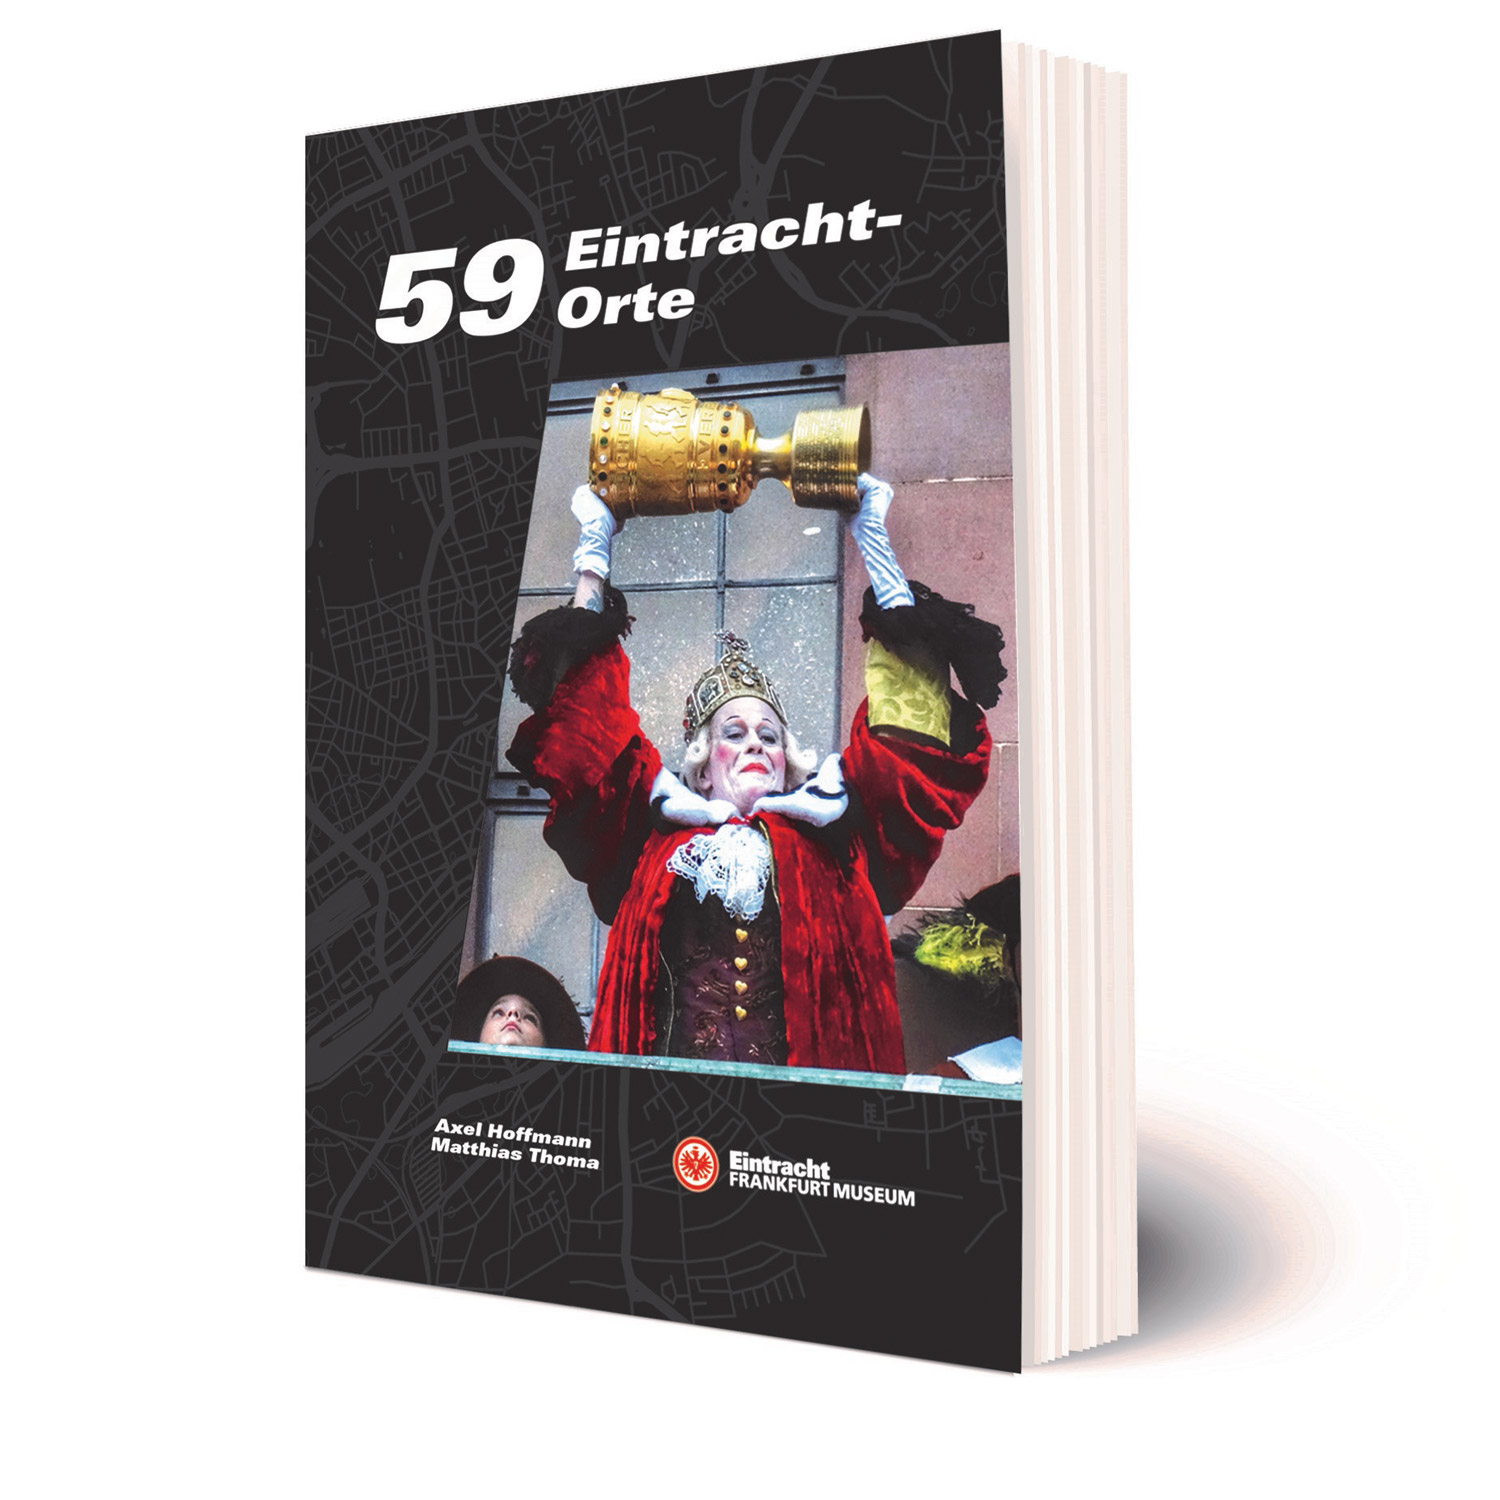 Bild 1: Buch 59 Eintracht-Orte